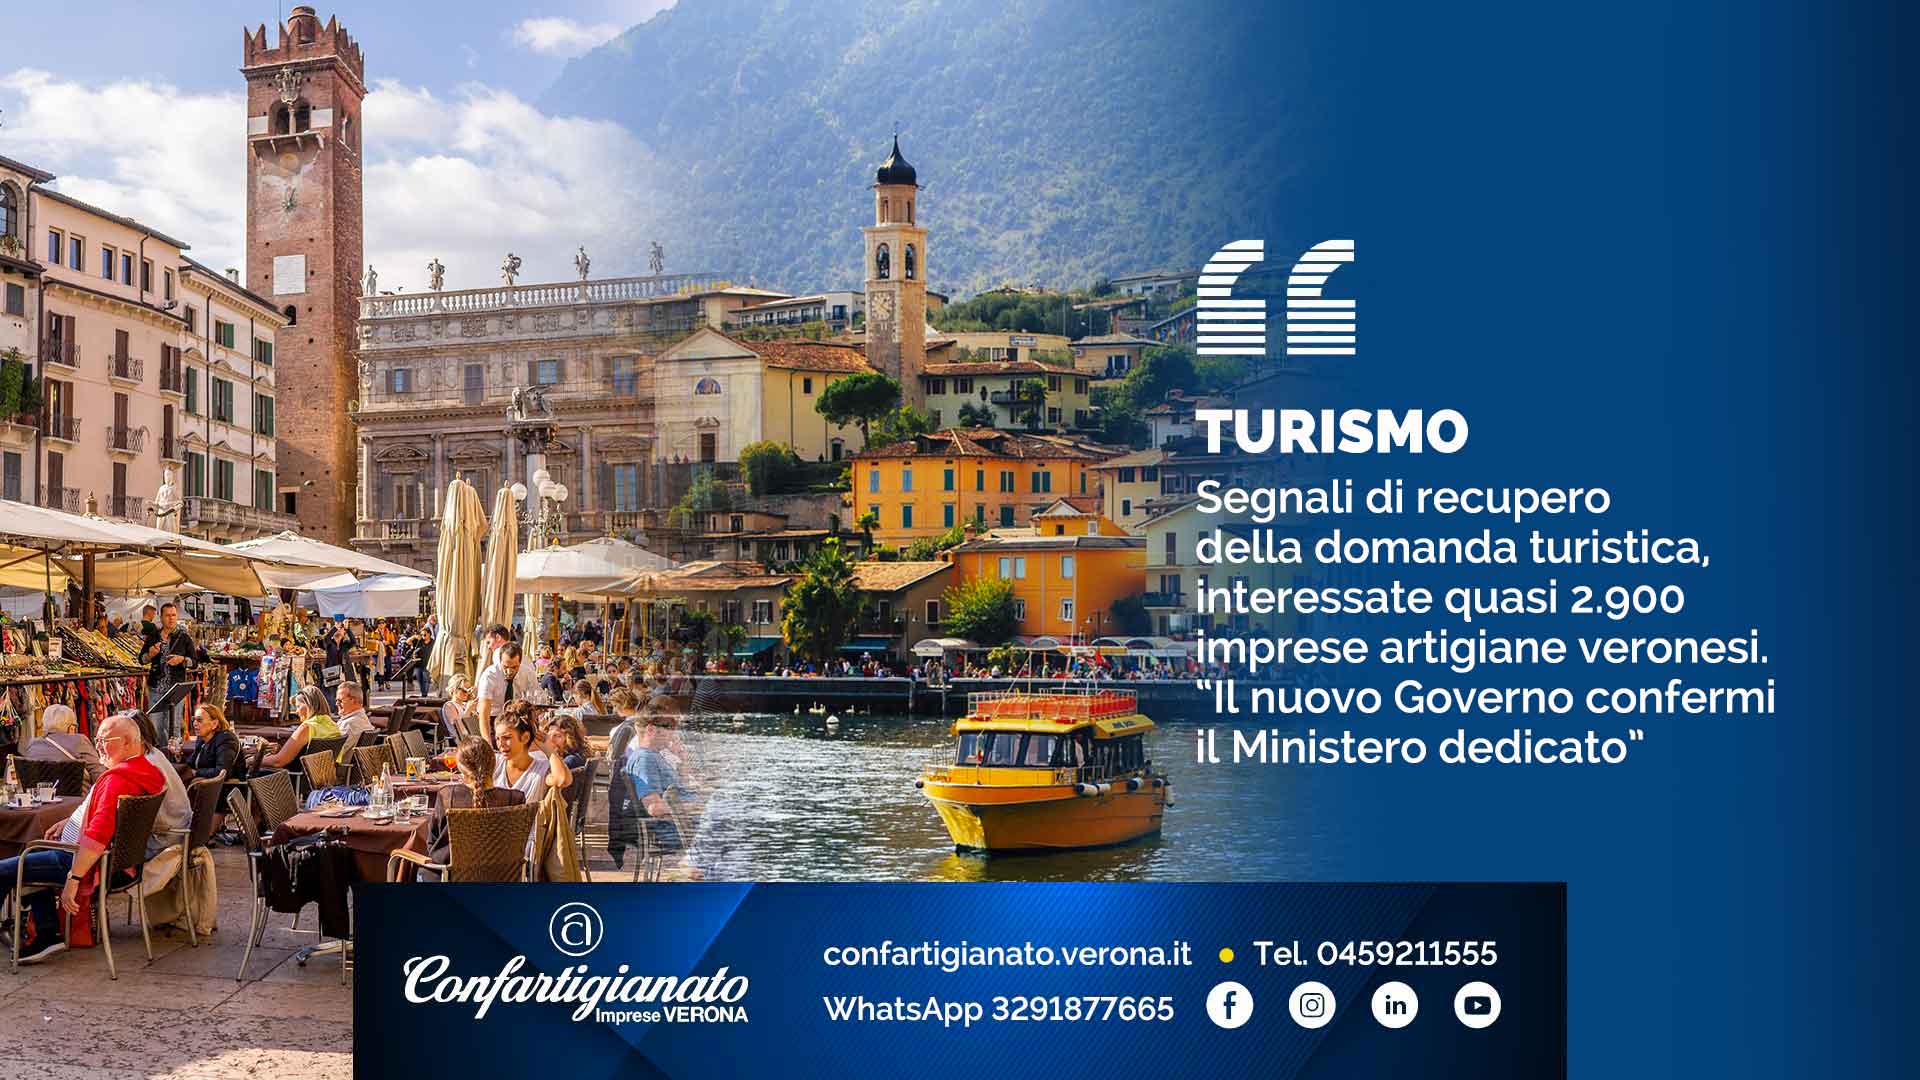 TURISMO - Segnali di recupero della domanda turistica, interessate quasi 2.900 imprese artigiane veronesi. “Il nuovo Governo confermi il Ministero dedicato”